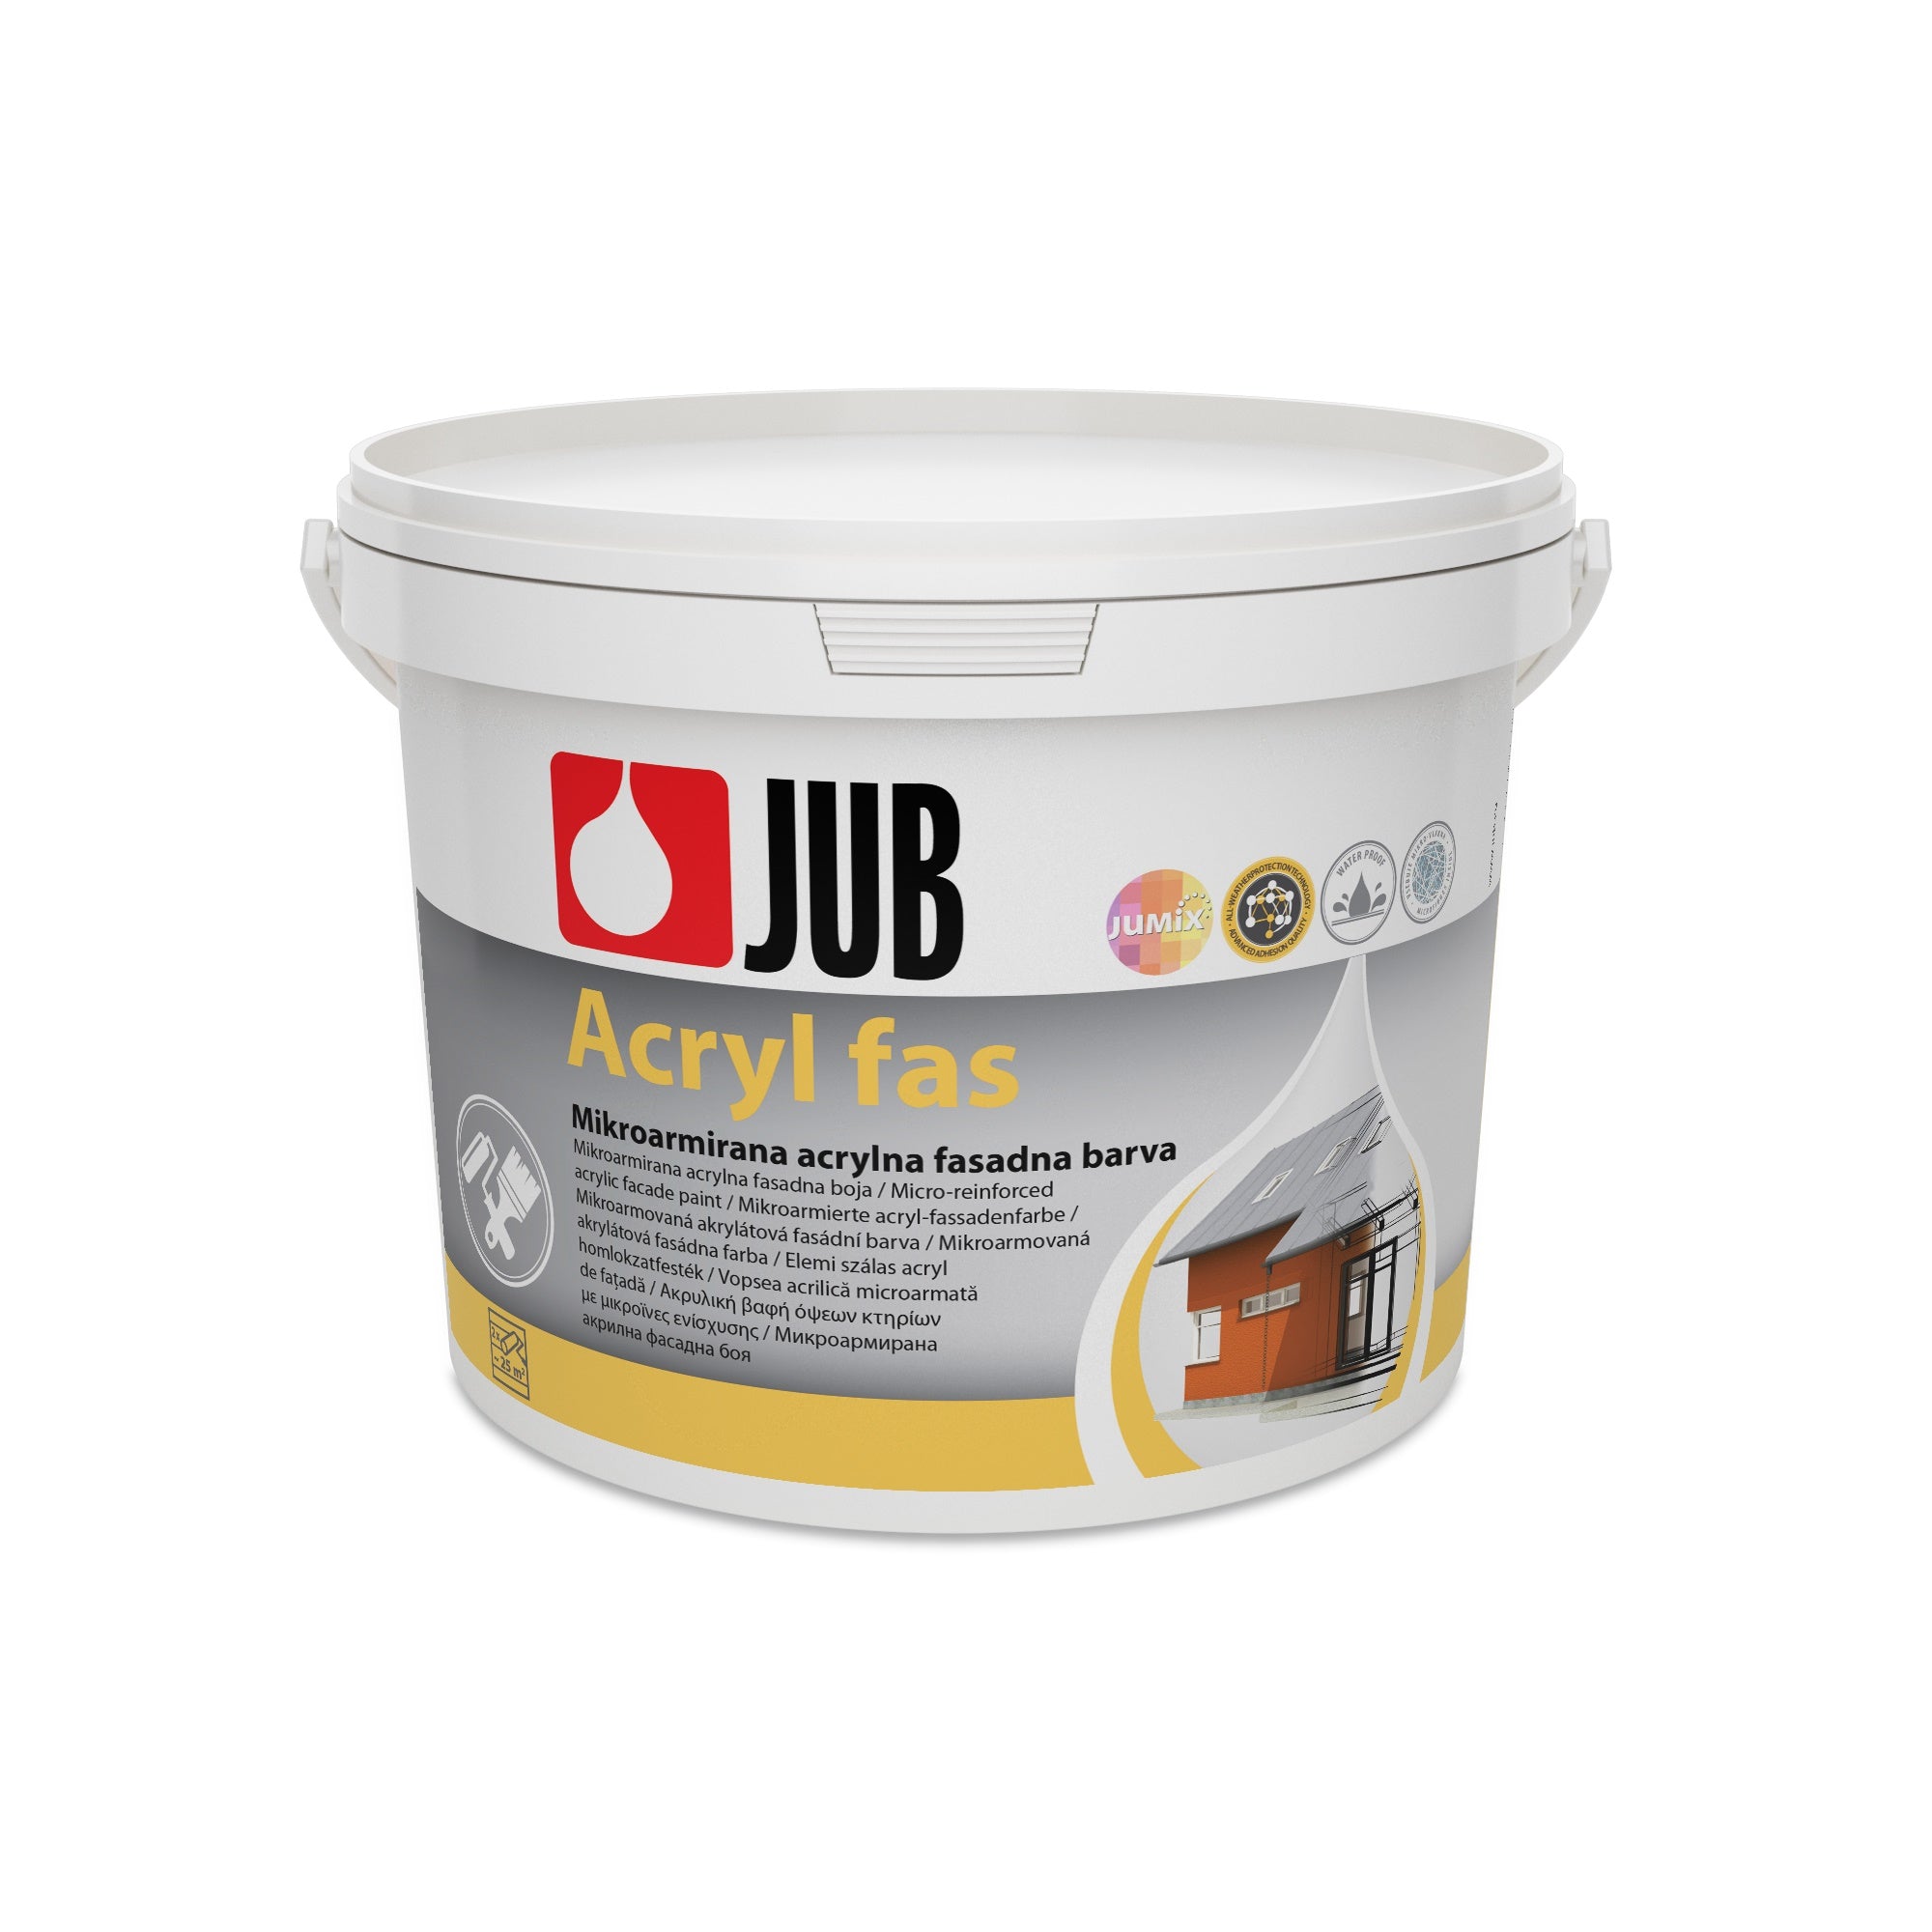 JUB Acryl fas mikroarmovaná akrylátová fasádní barva 2 l